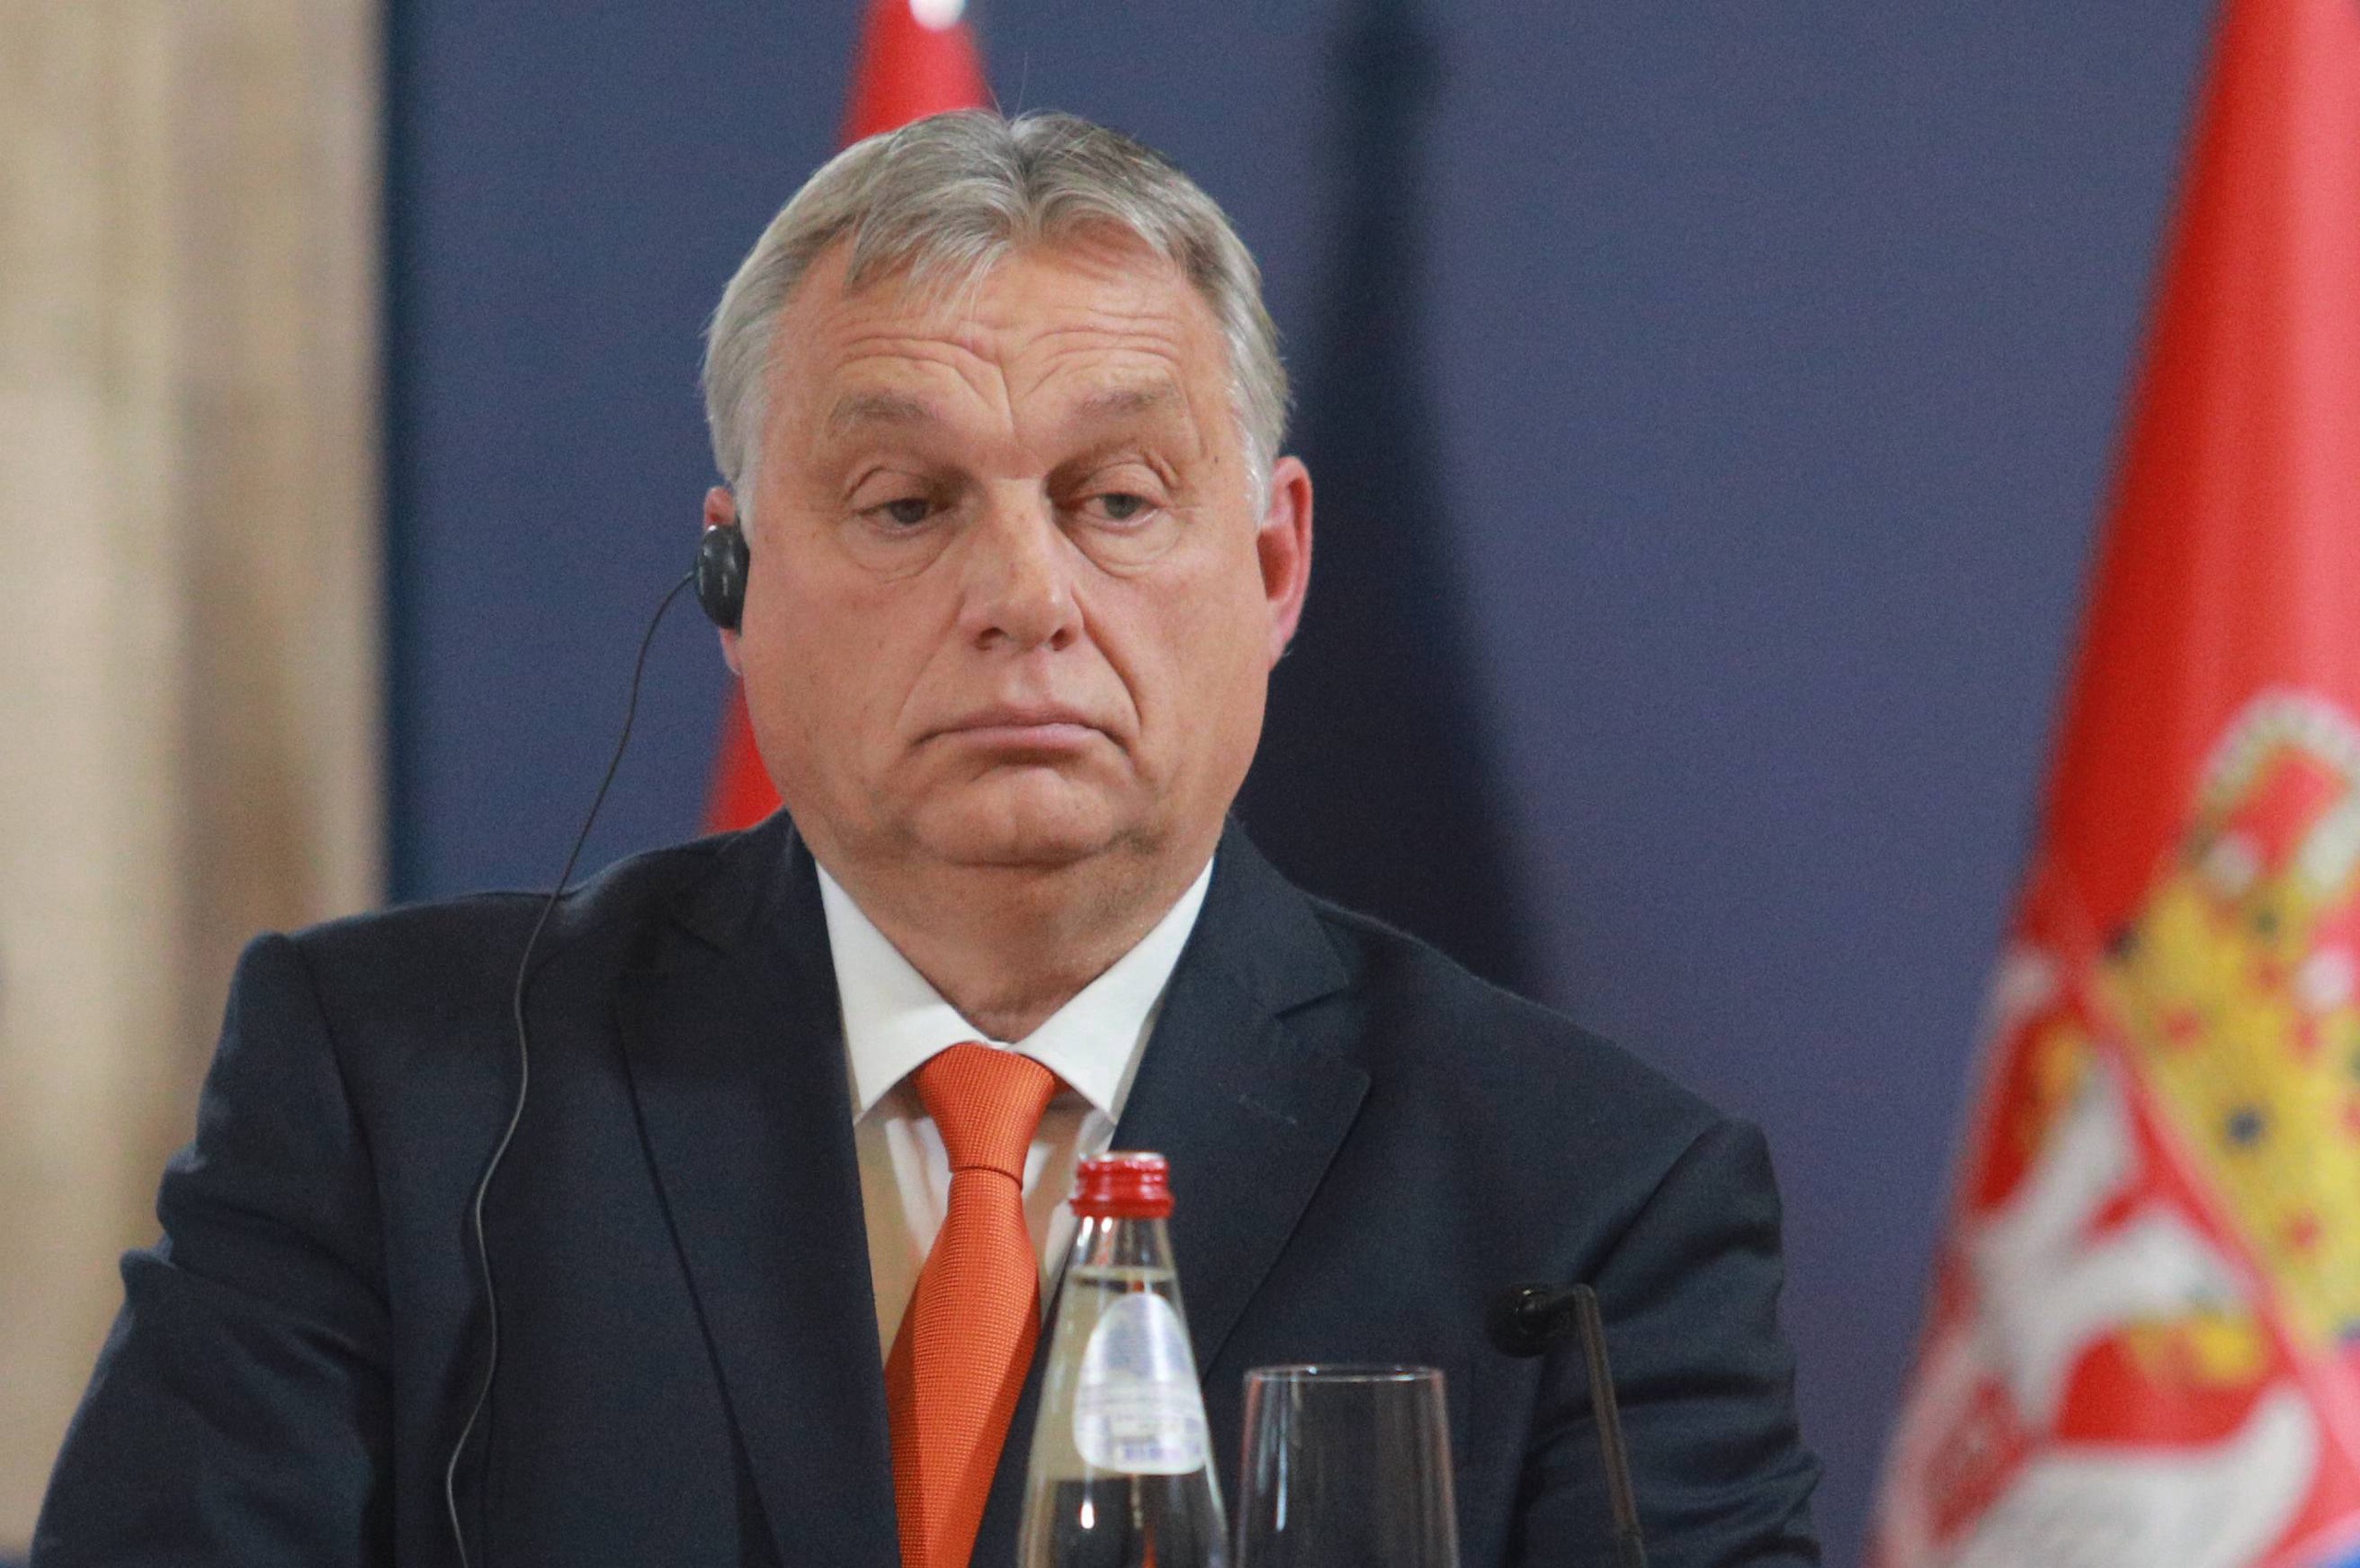 Hongarije had al meerdere keren de kans gekregen om plannen te maken om de rechtsstaat en de democratie te verbeteren in het land, maar keer op keer kon leider Viktor Orbán niet overtuigen met zijn plannen. 